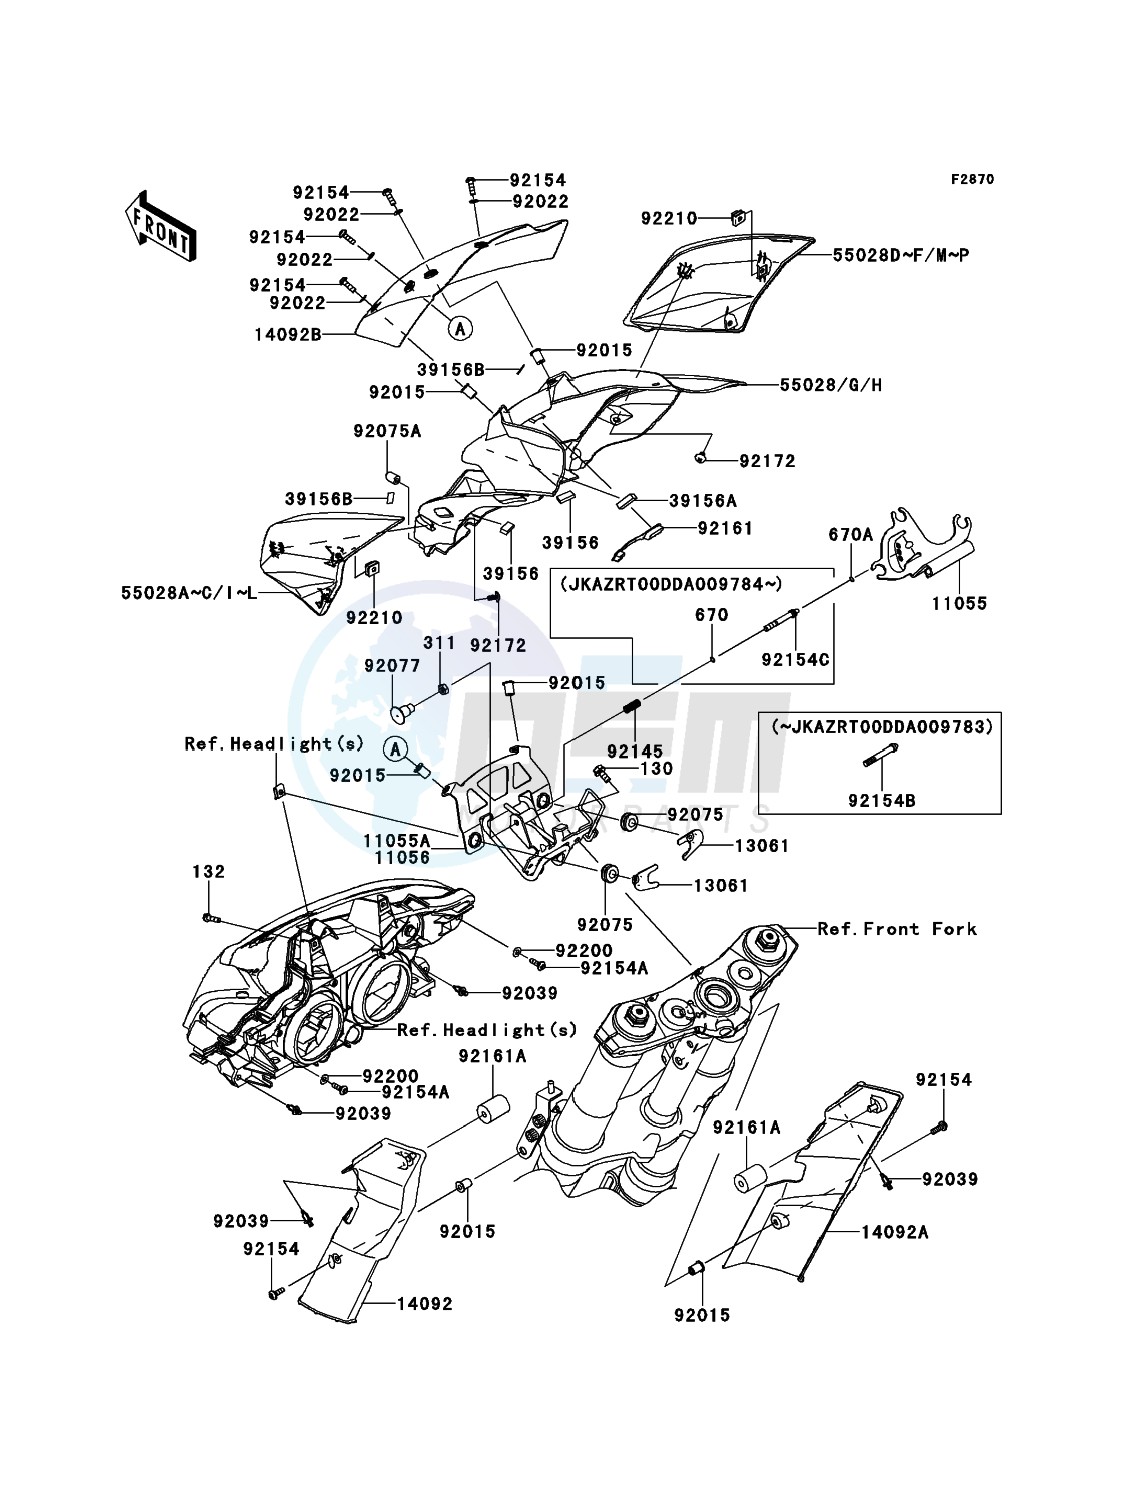 Cowling(Upper) blueprint